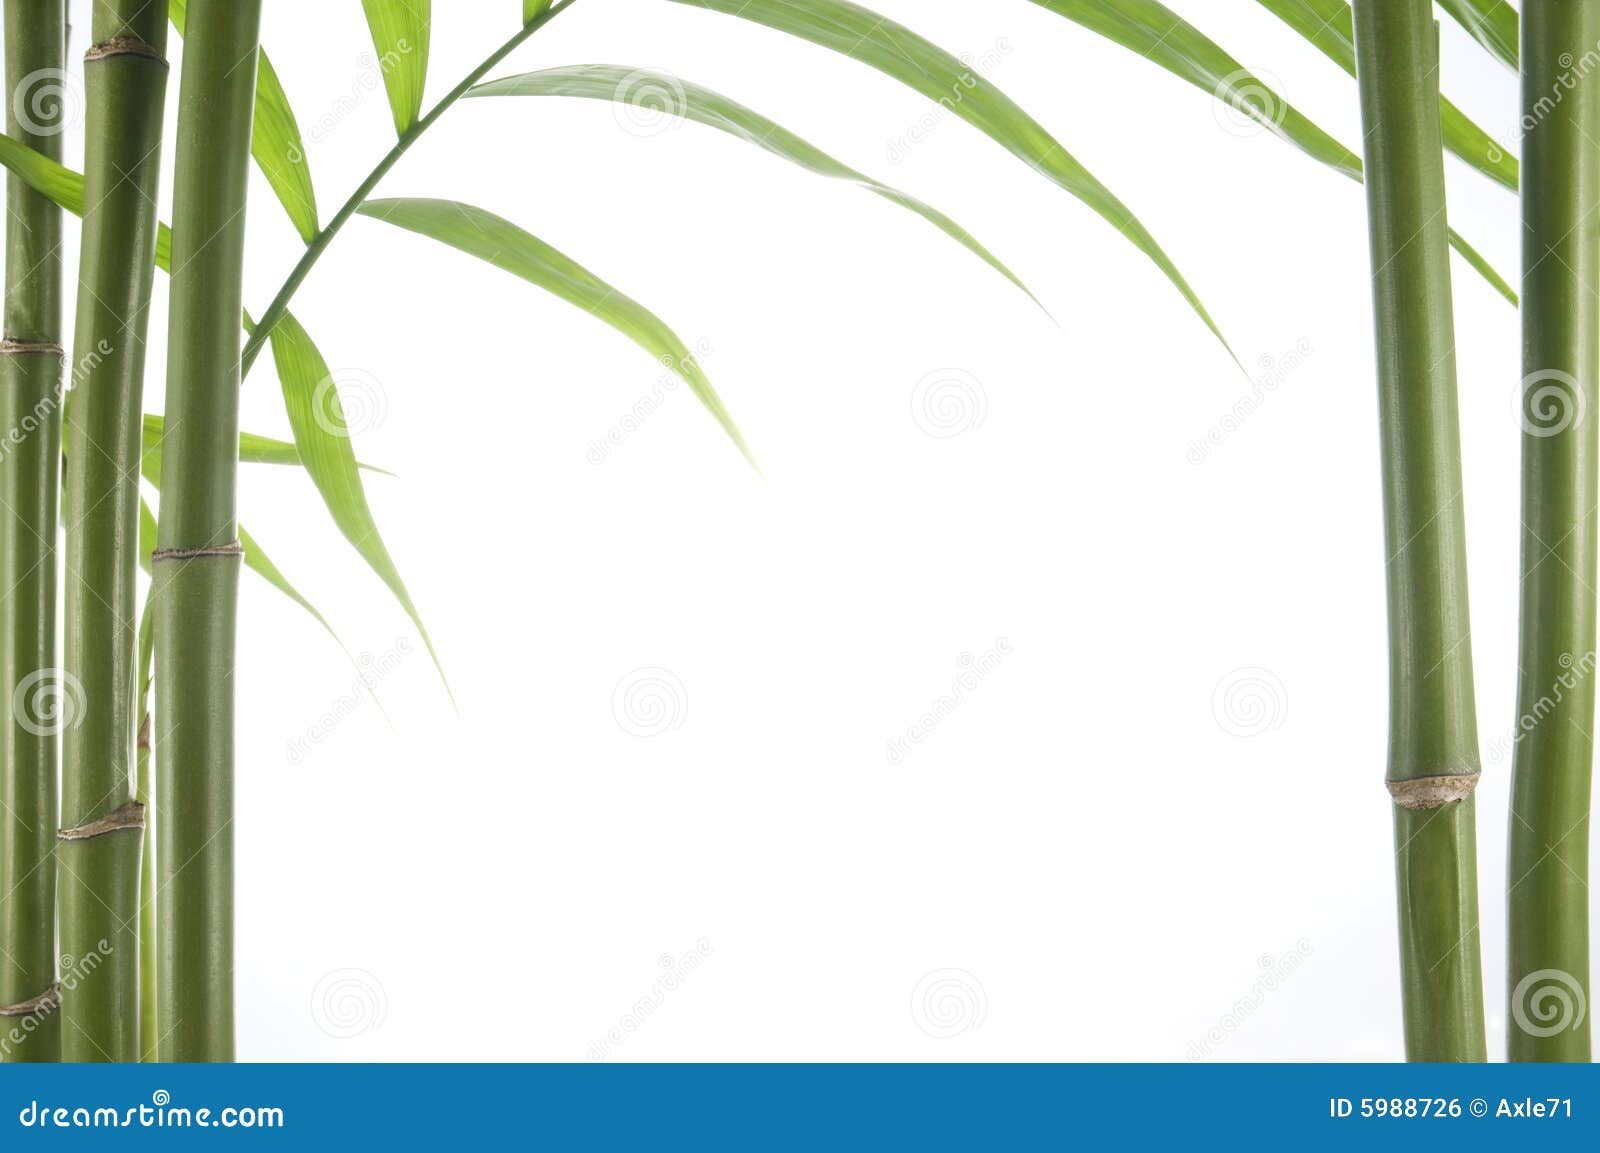 Bamboo plant stock photo. Image of stem, plant, fresh - 5988726